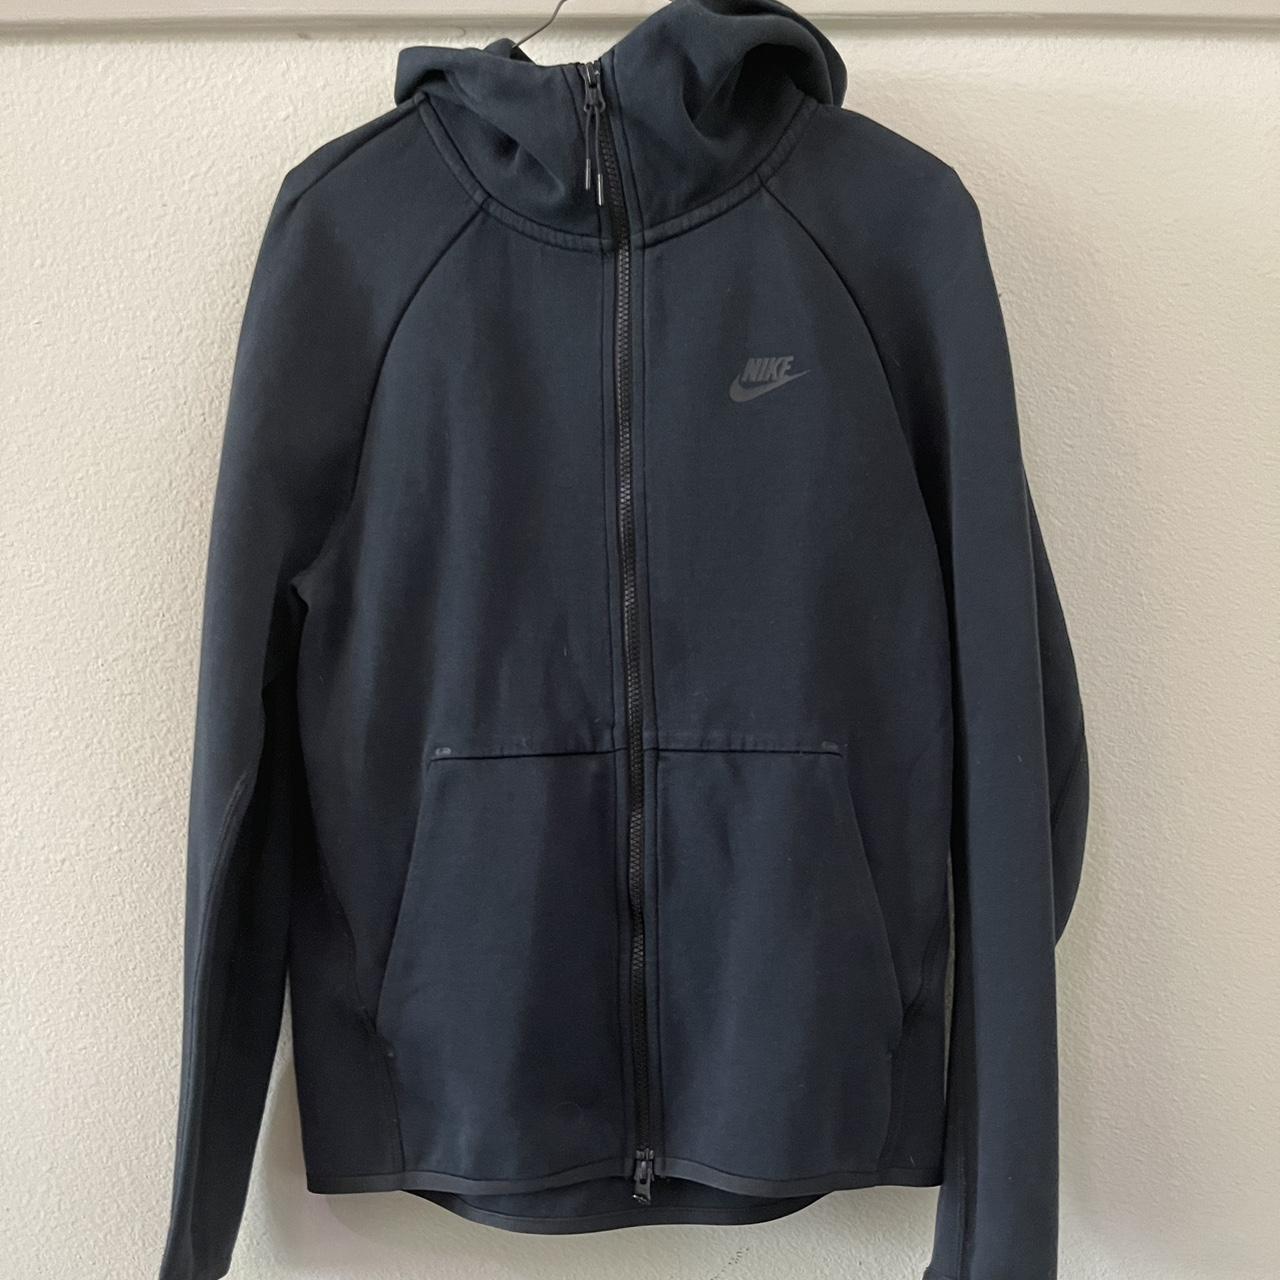 Black Nike tech fleece jacket - Depop